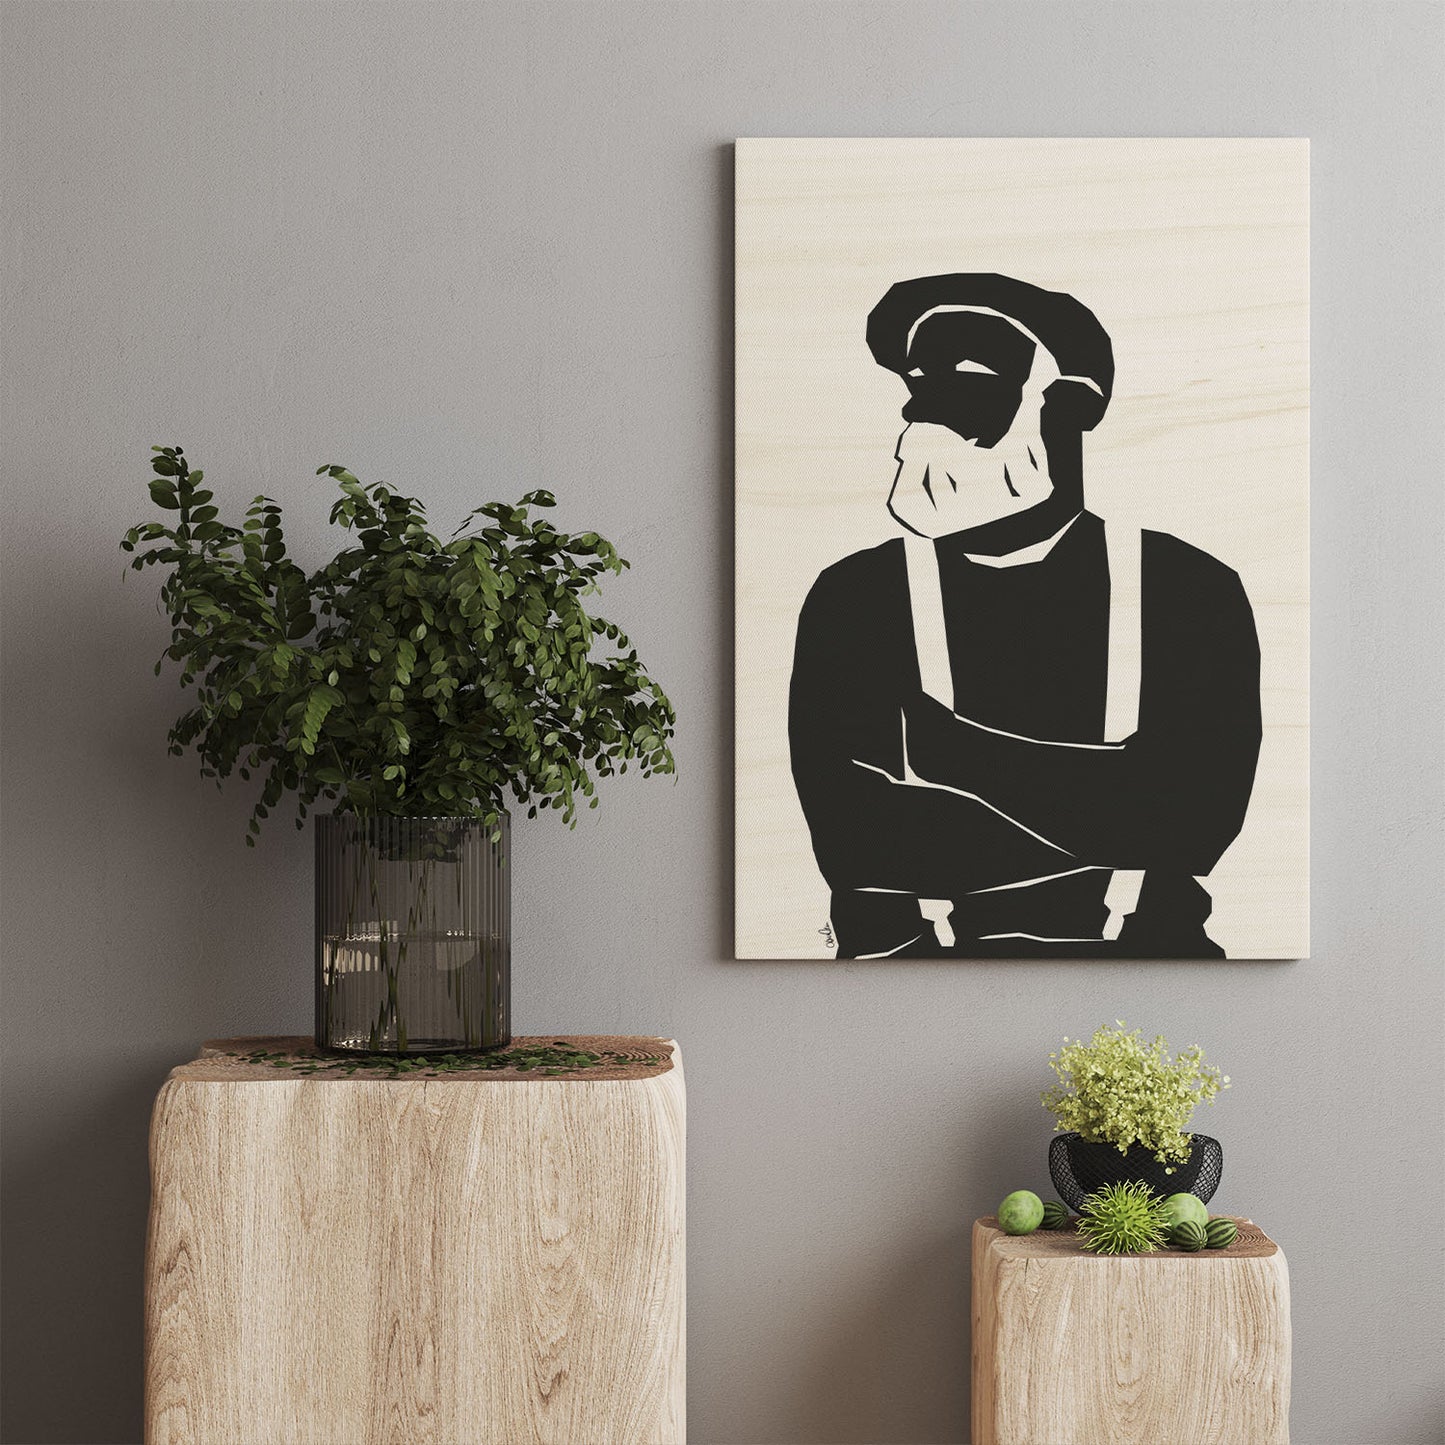 Treplate til vegg med trykk. Kunst-ish selger plakater og Wood Prints. Her med trykk av en mannsfigur med skjegg, bukseseler og sixpence hatt.